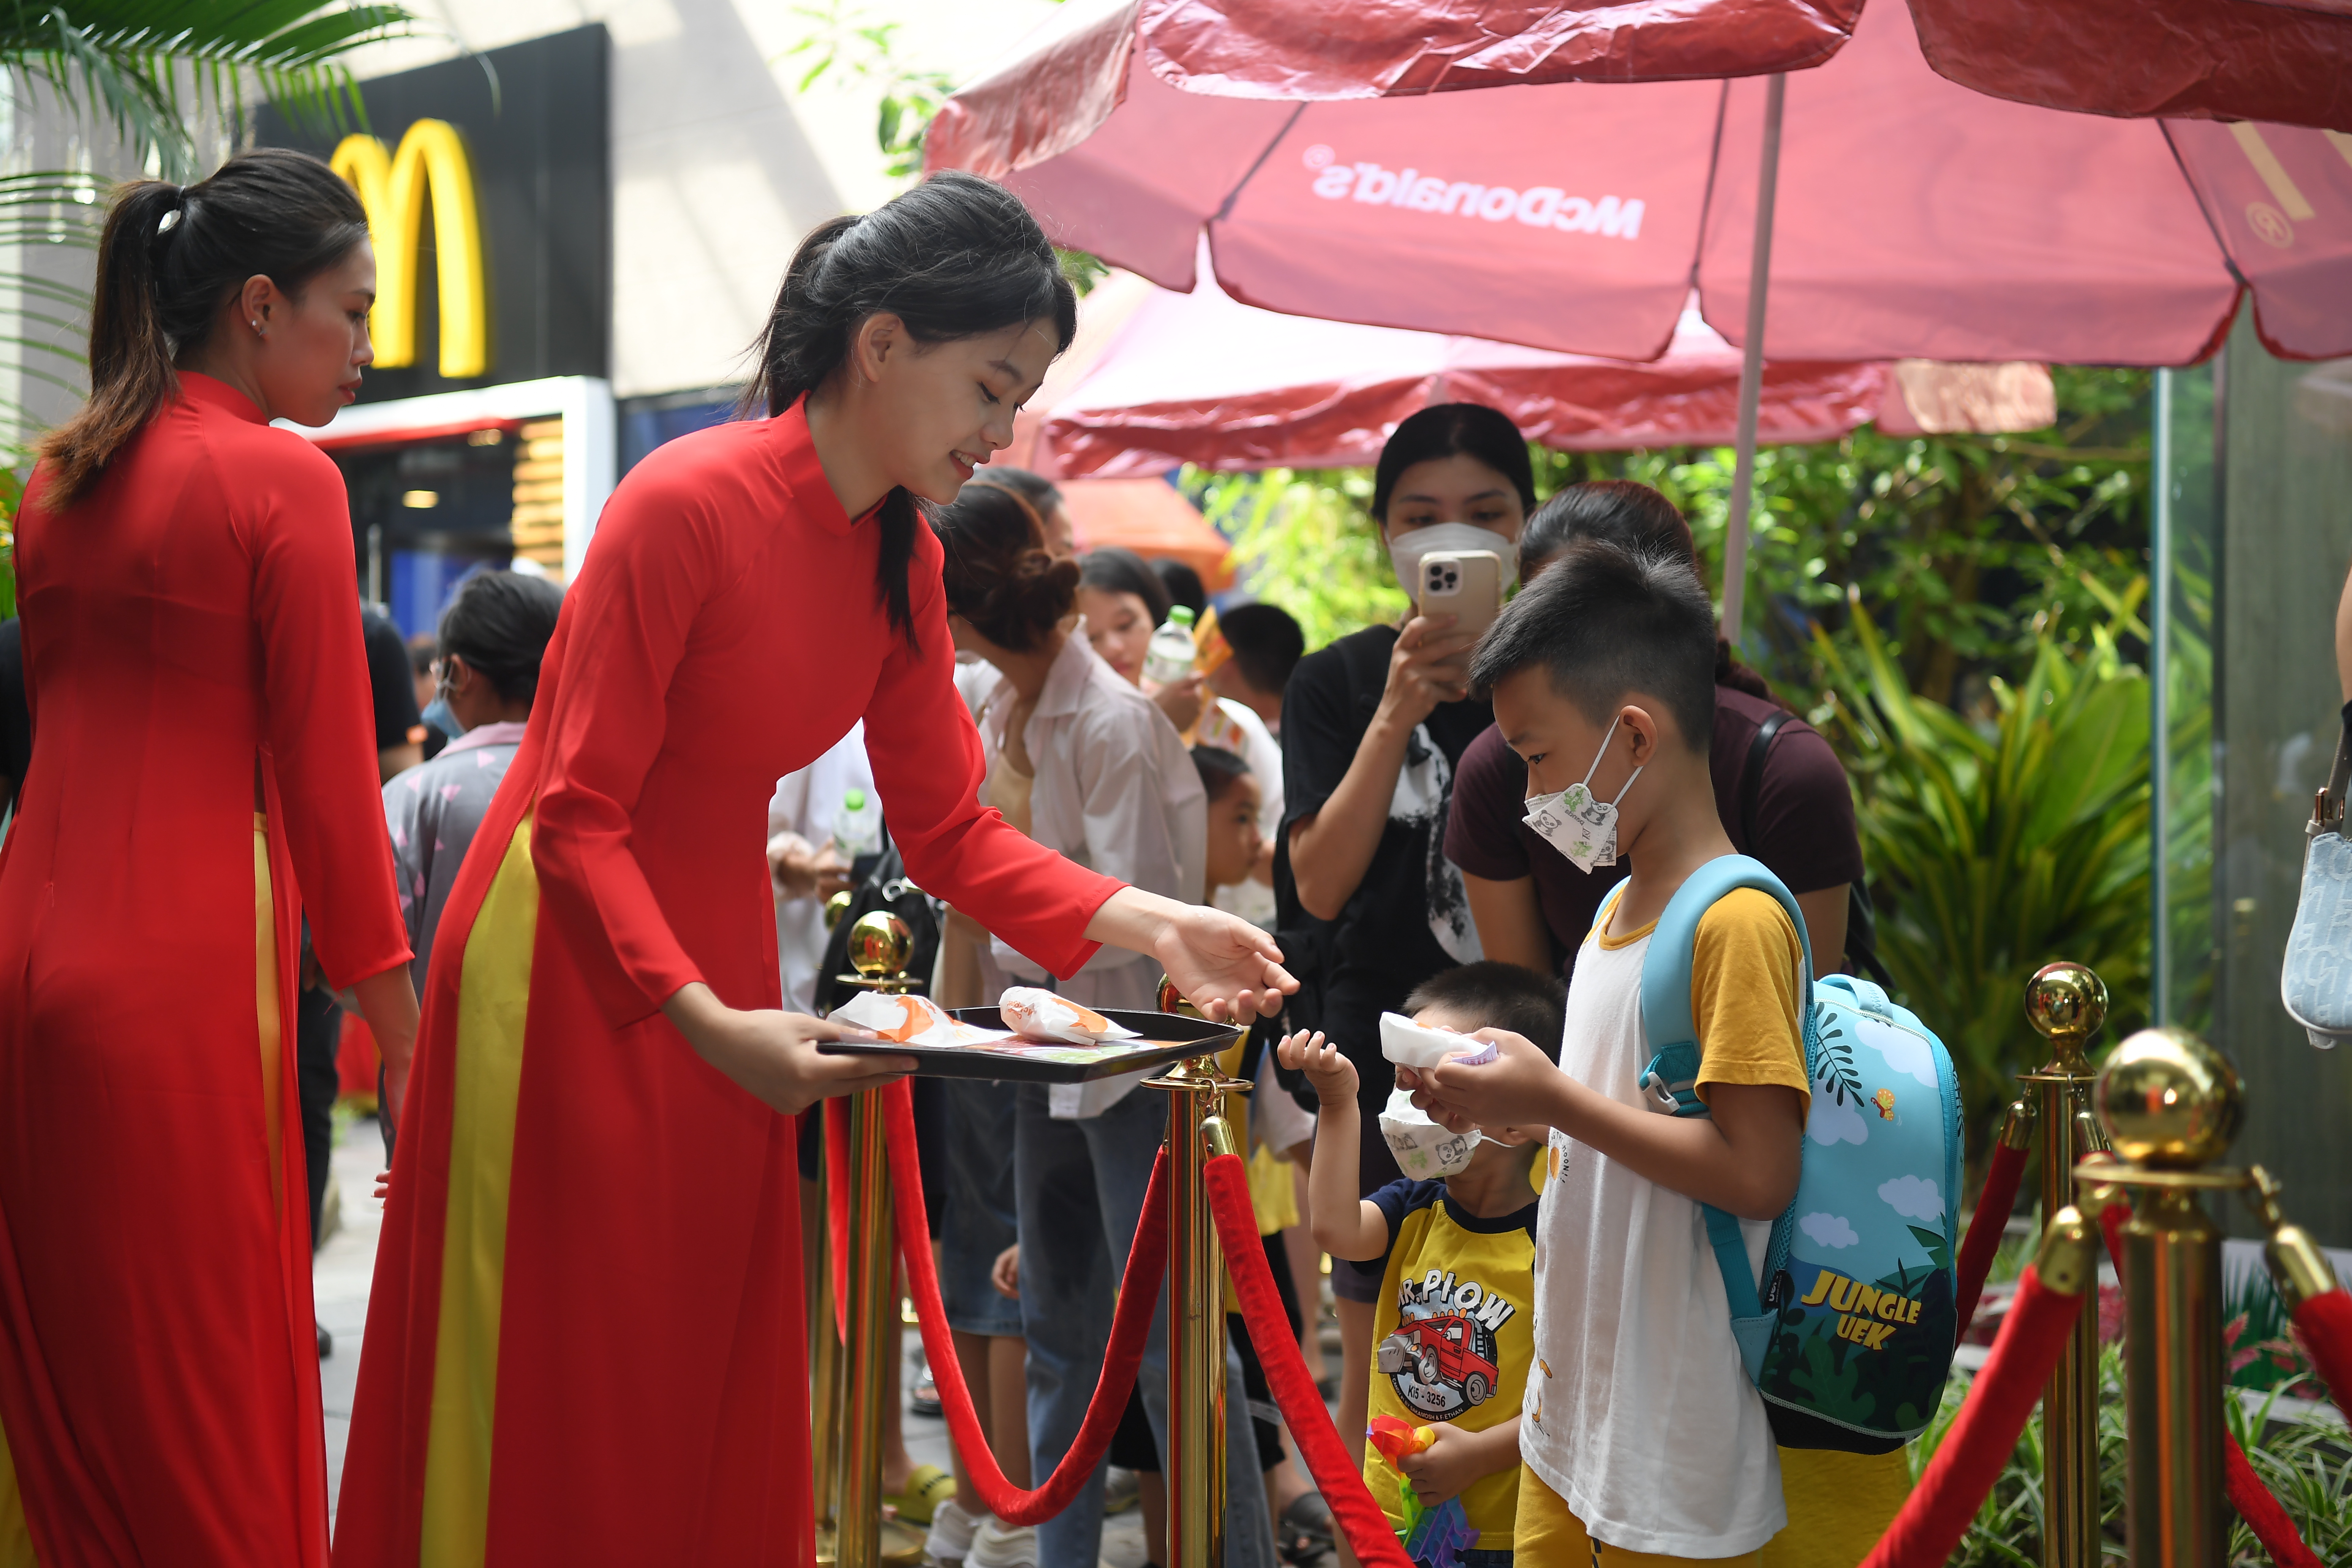 Nhằm ch&uacute;c mừng sự kiện khai trương, McDonald&rsquo;s Việt Nam đang triển khai chương tr&igrave;nh ưu đ&atilde;i suốt th&aacute;ng l&ecirc;n đến 100%.